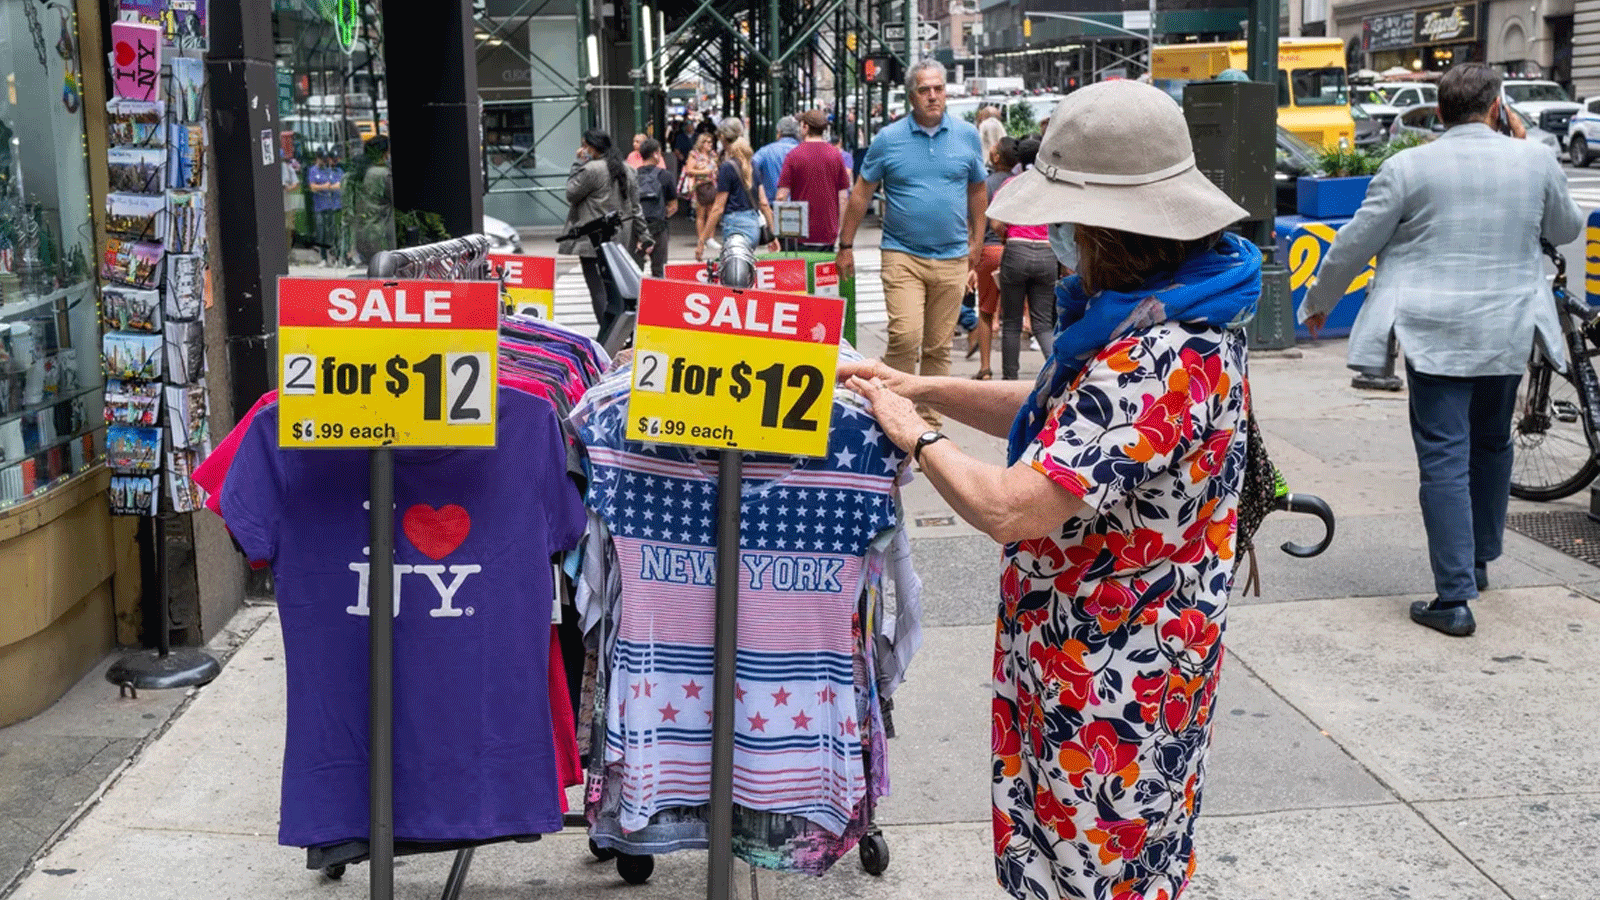 امرأة تتسوق خارج متجر في مانهاتن\ مدينة نيويورك في 28 تموز\يوليو 2022، حيث بدأت مبيعات التجزئة في الانخفاض بعد بقائها قوية خلال فترة الوباء، وهي علامة مبكرة محتملة على تباطؤ الاقتصاد